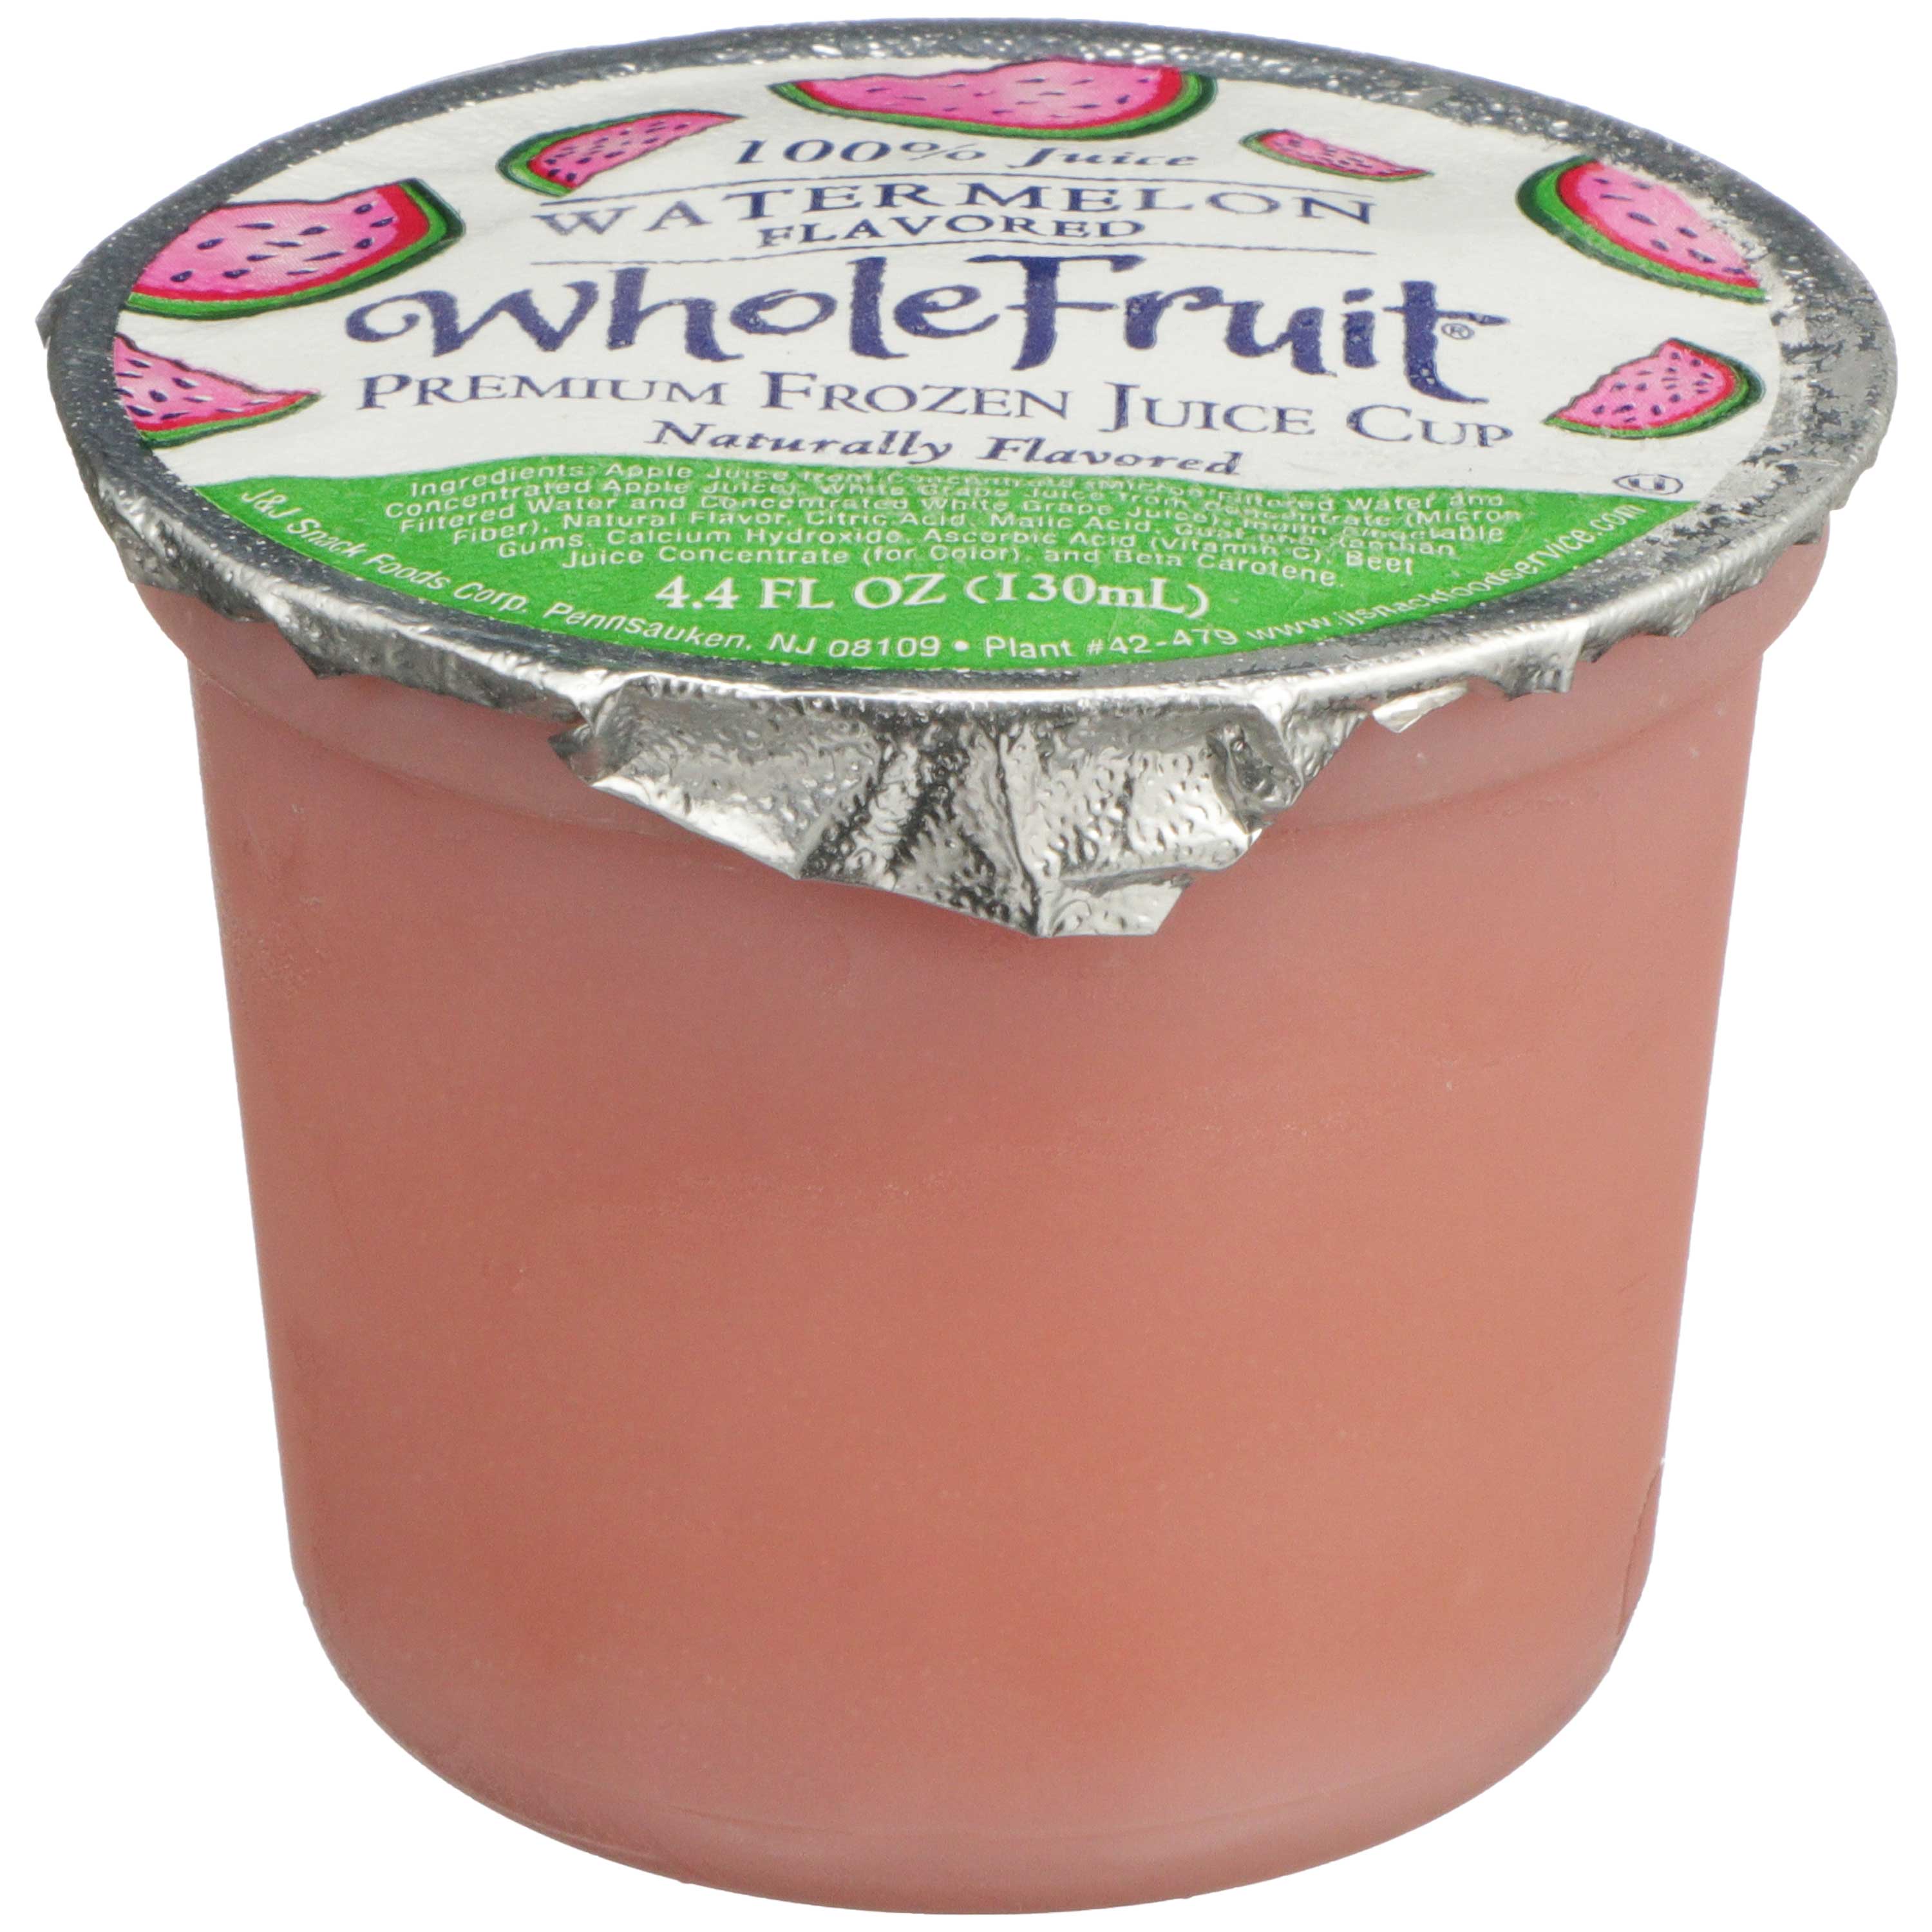 Whole Fruit Watermelon Premium Frozen Juice Cup, 4.4 ounce -- 96 per case